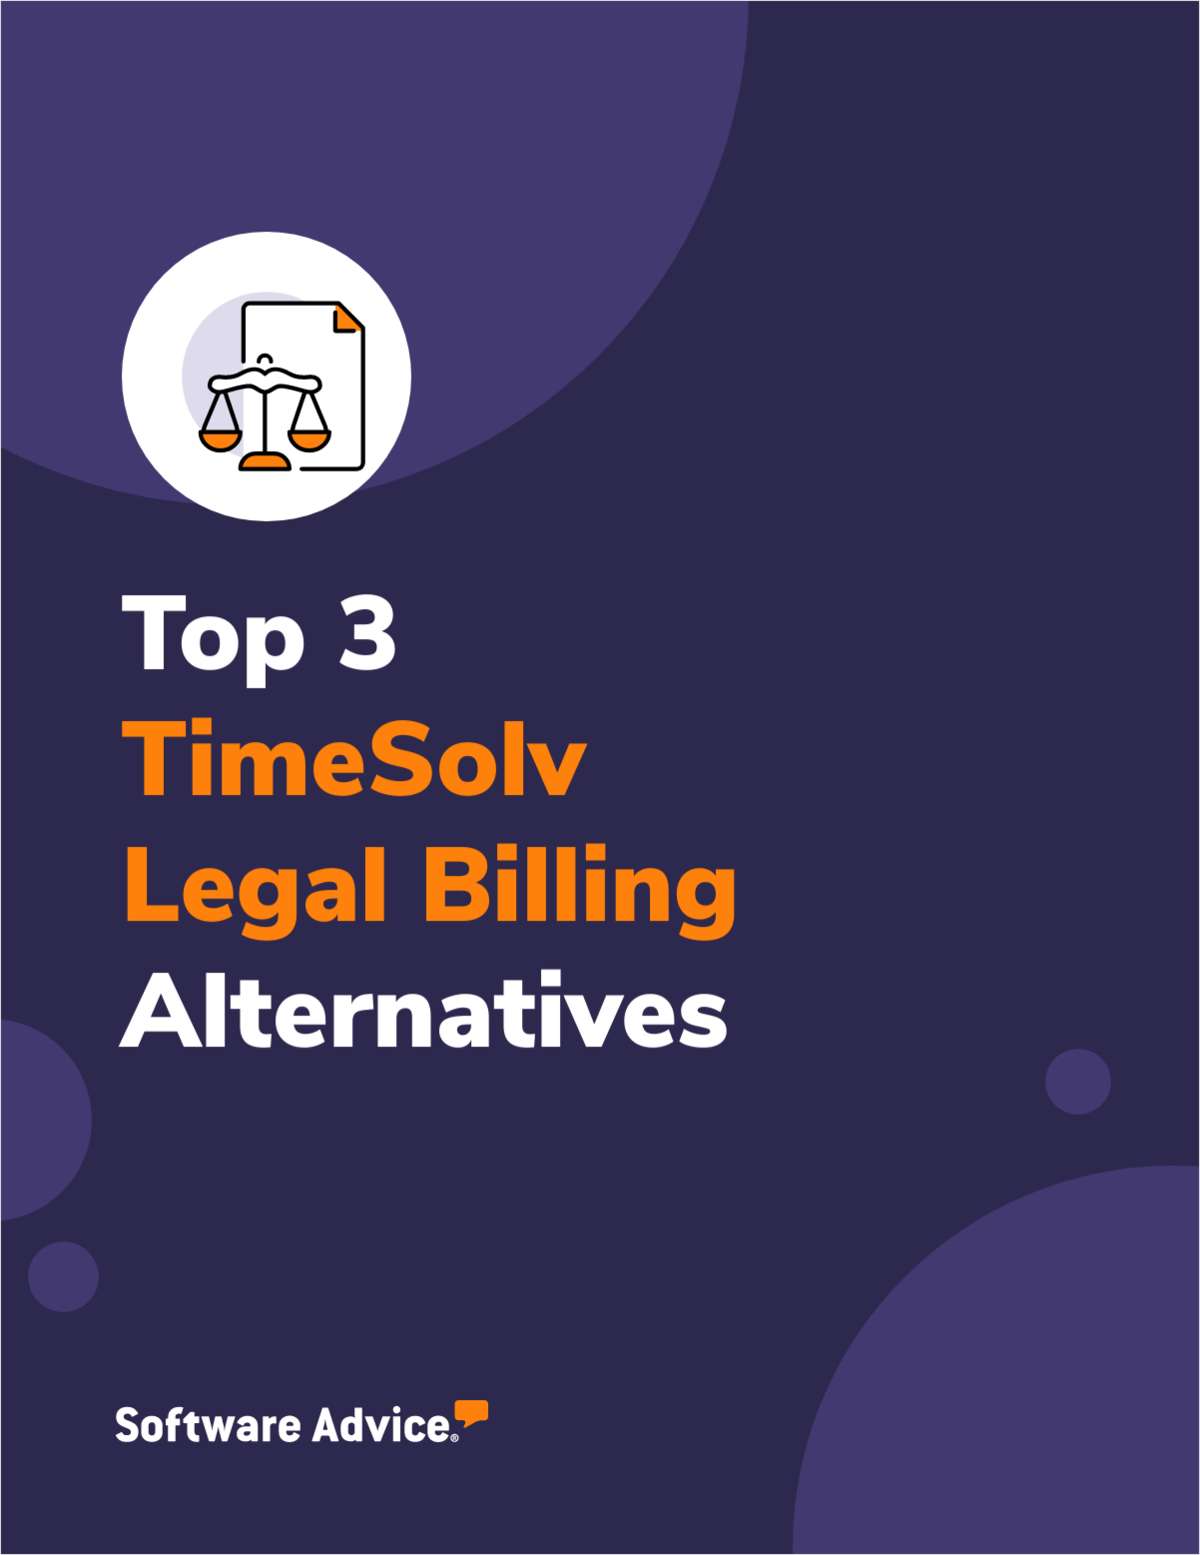 Top 3 TimeSolv Legal Billing Alternatives